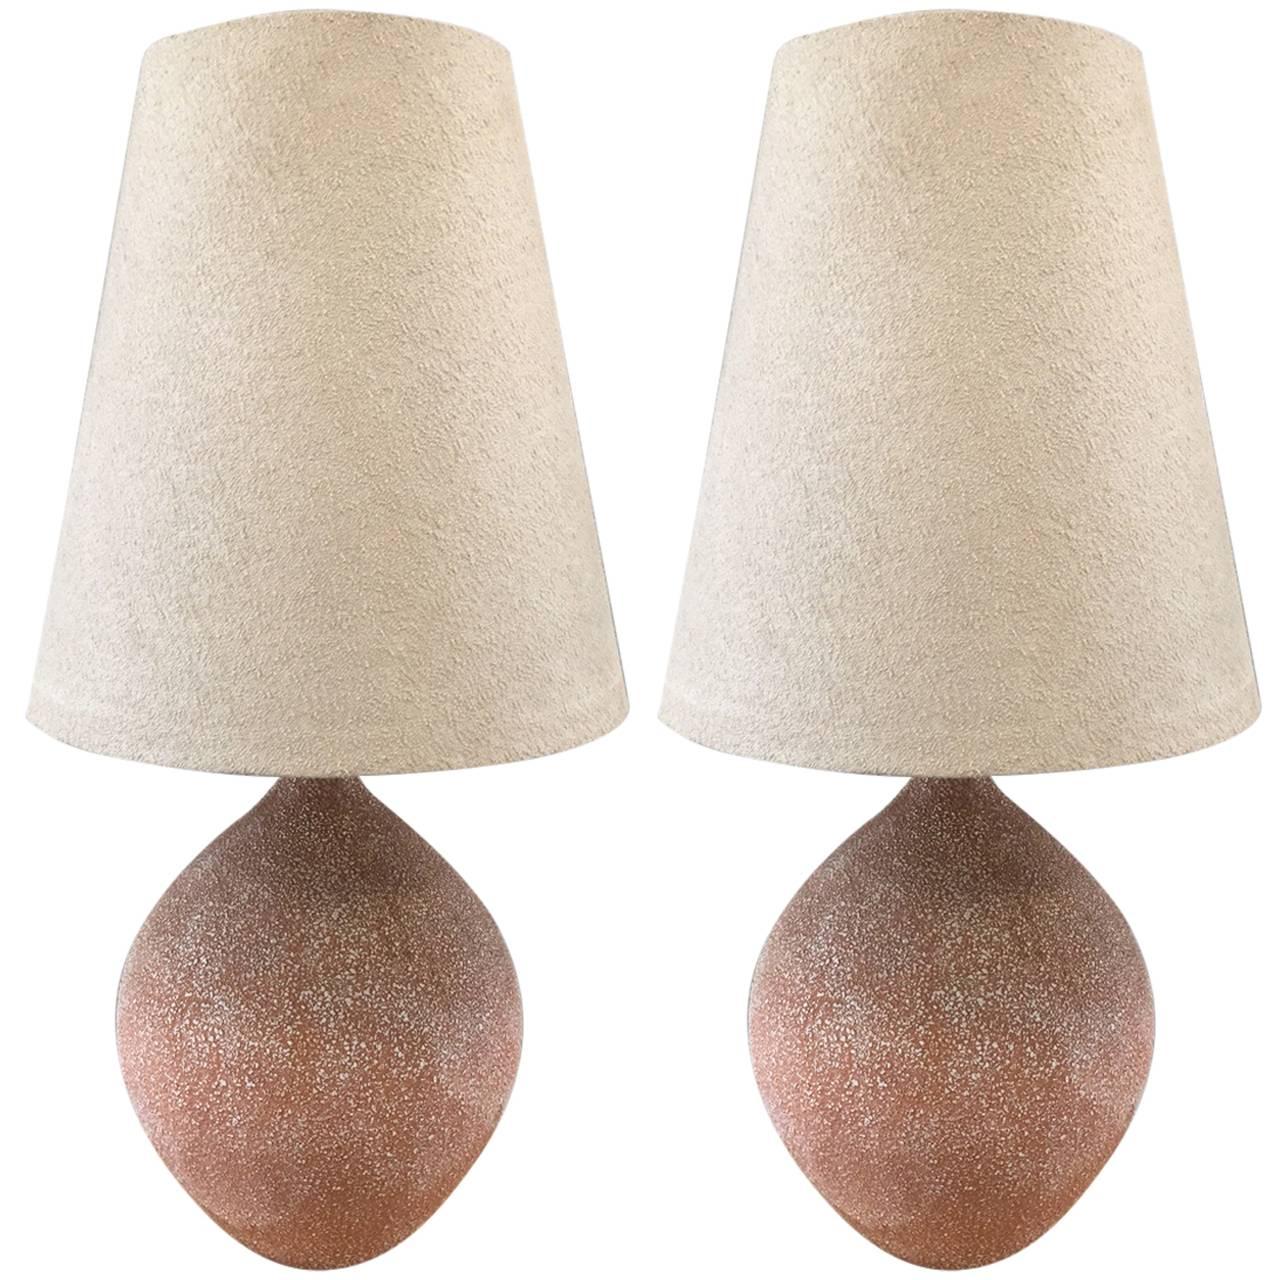 Pair of Textured Ceramic Lamps